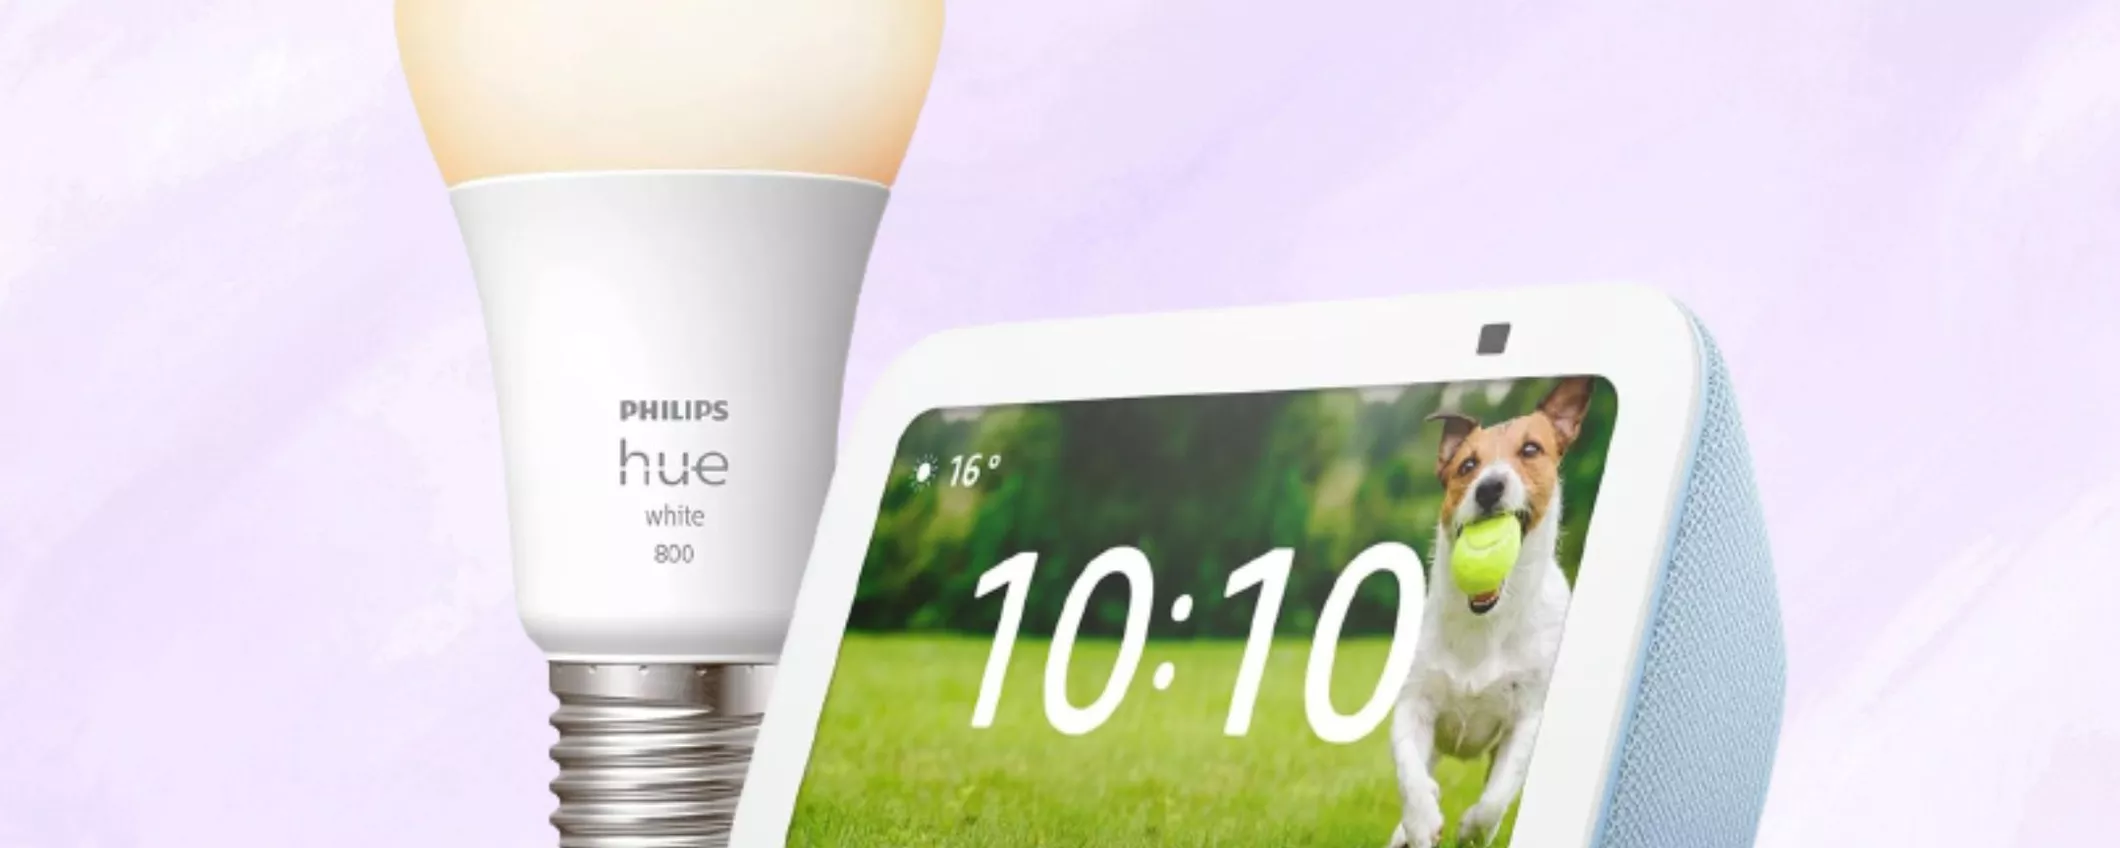 Nuovo Echo Show 5 + lampadina smart Philips a soli 66 euro: prosegue Festa offerte Prime!